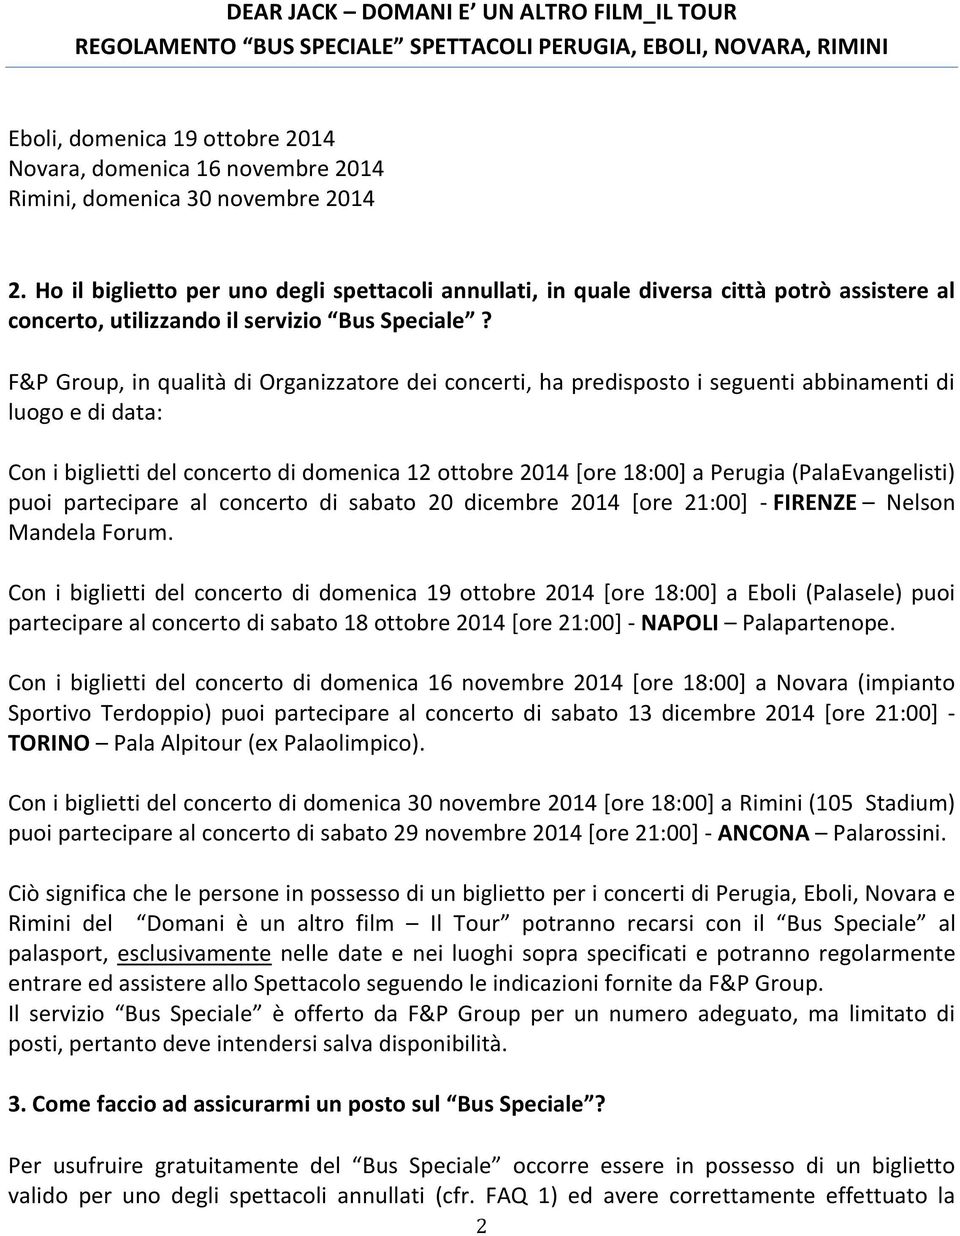 F&P Group, in qualità di Organizzatore dei concerti, ha predisposto i seguenti abbinamenti di luogo e di data: Con i biglietti del concerto di domenica 12 ottobre 2014 [ore 18:00] a Perugia